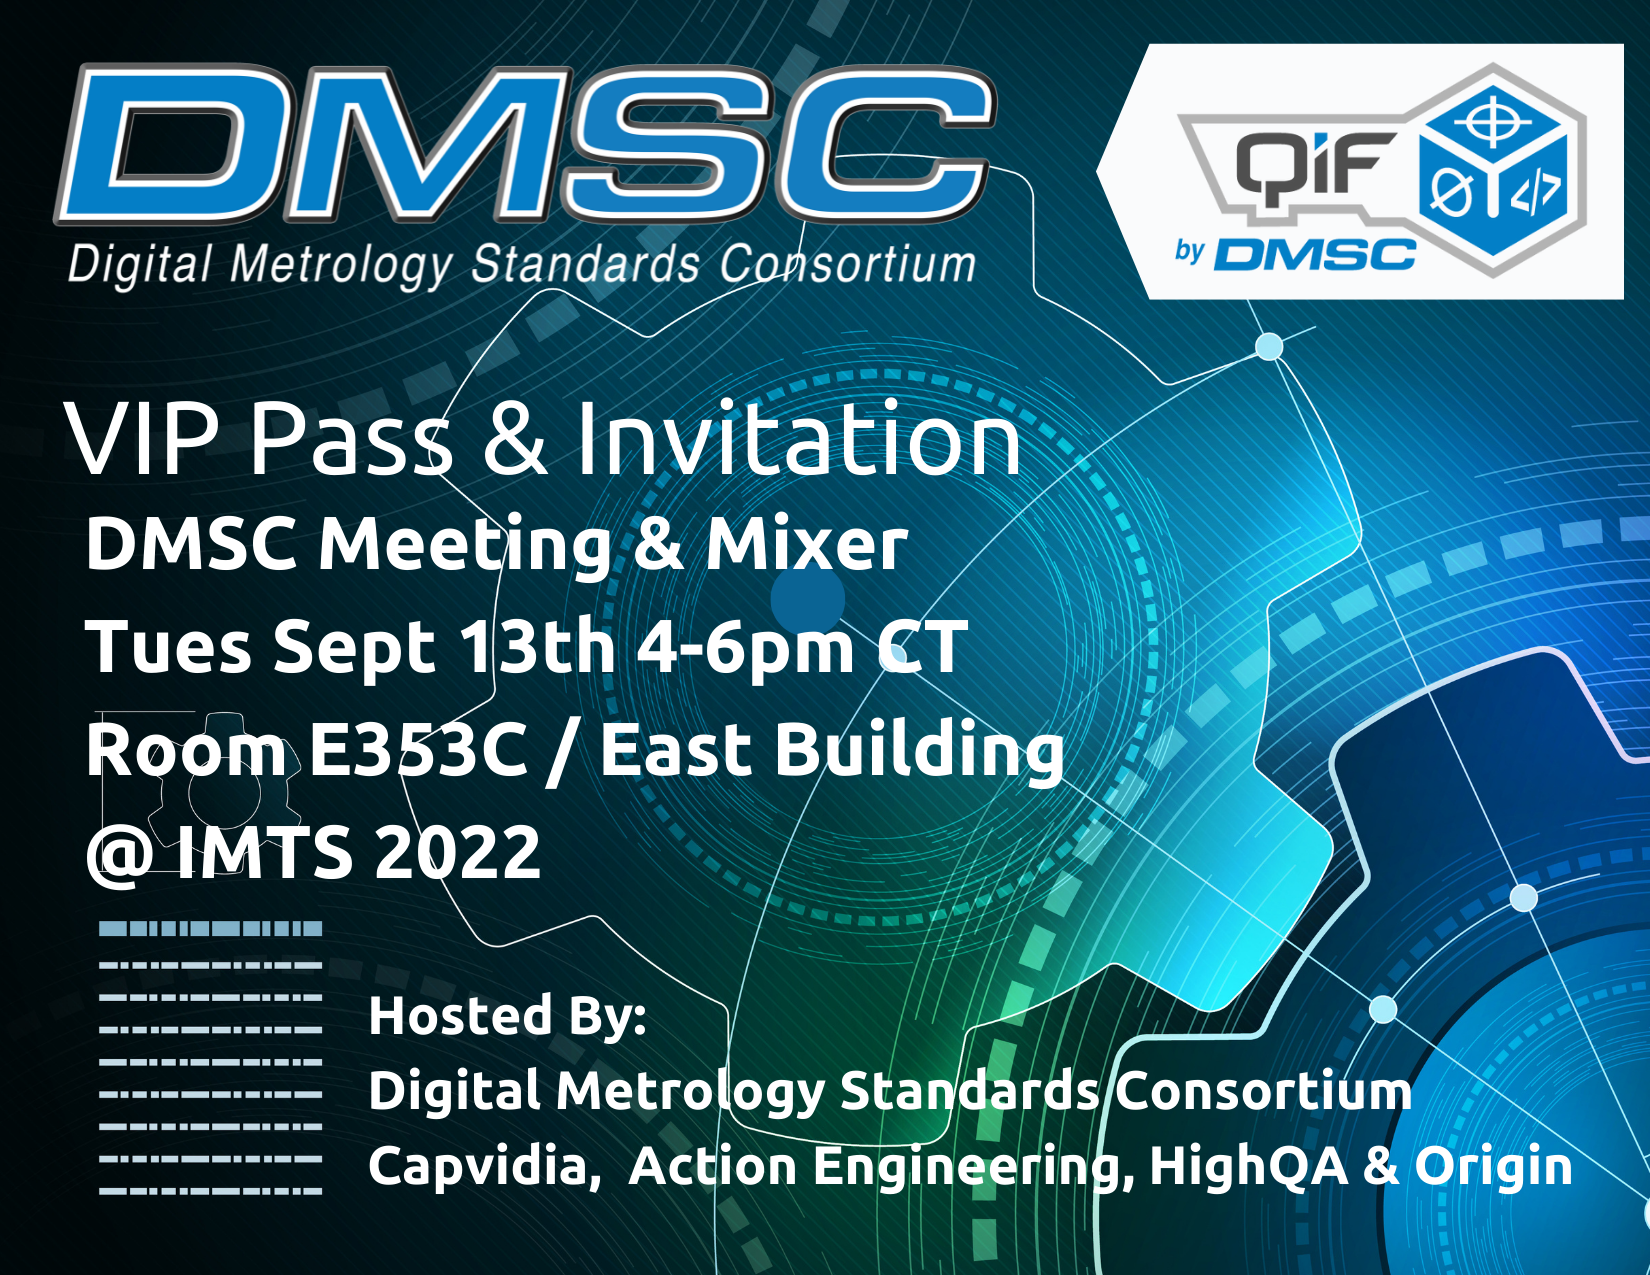 DMSC Meeting & Mixer 9/13/22 4-6pm CT at IMTS